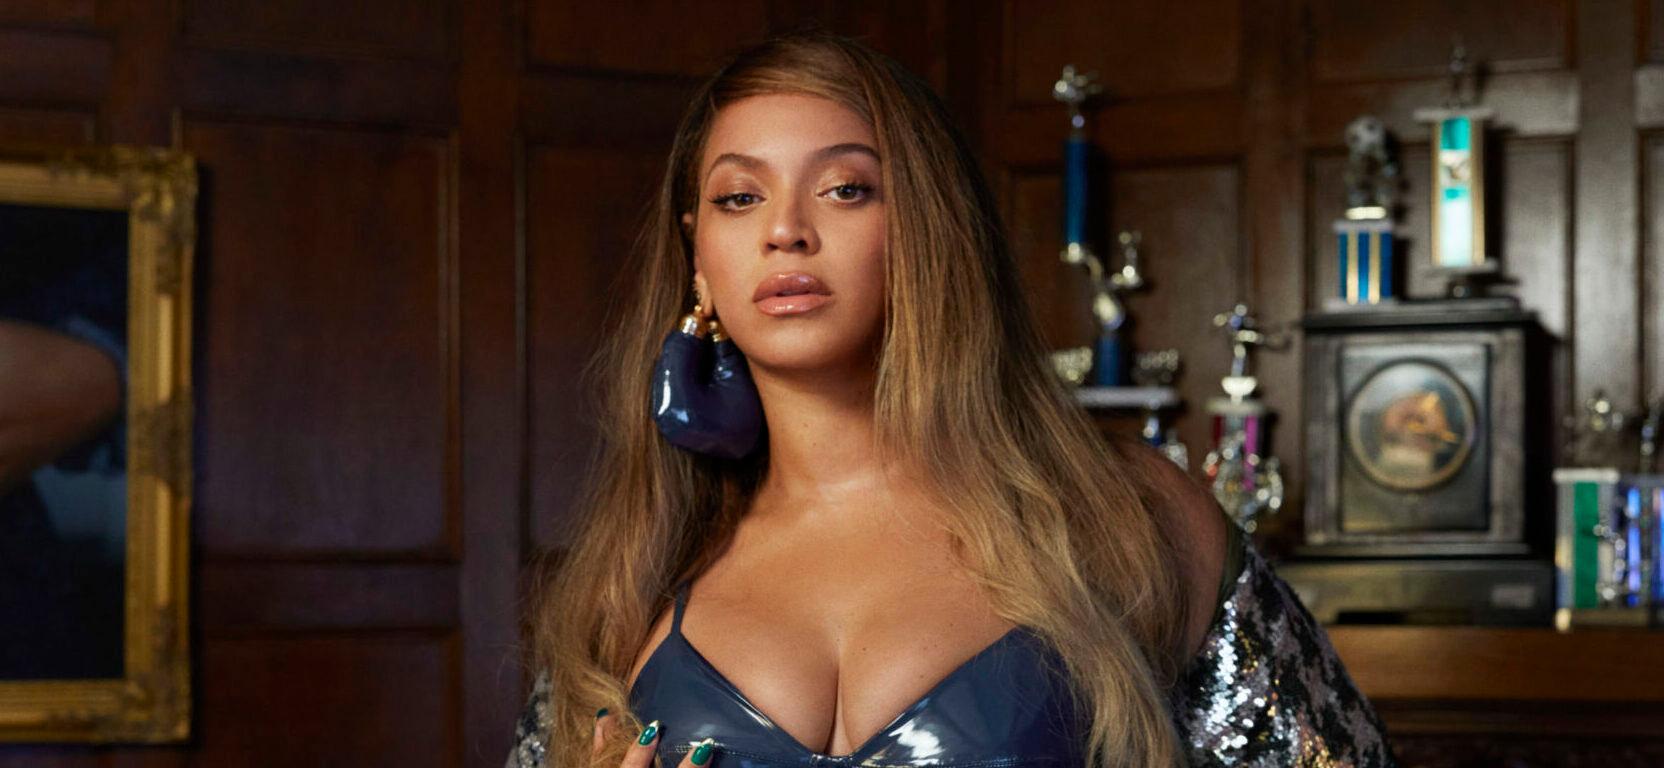 Beyoncé Sets Strict Standards For Crew On Next Renaissance Tour